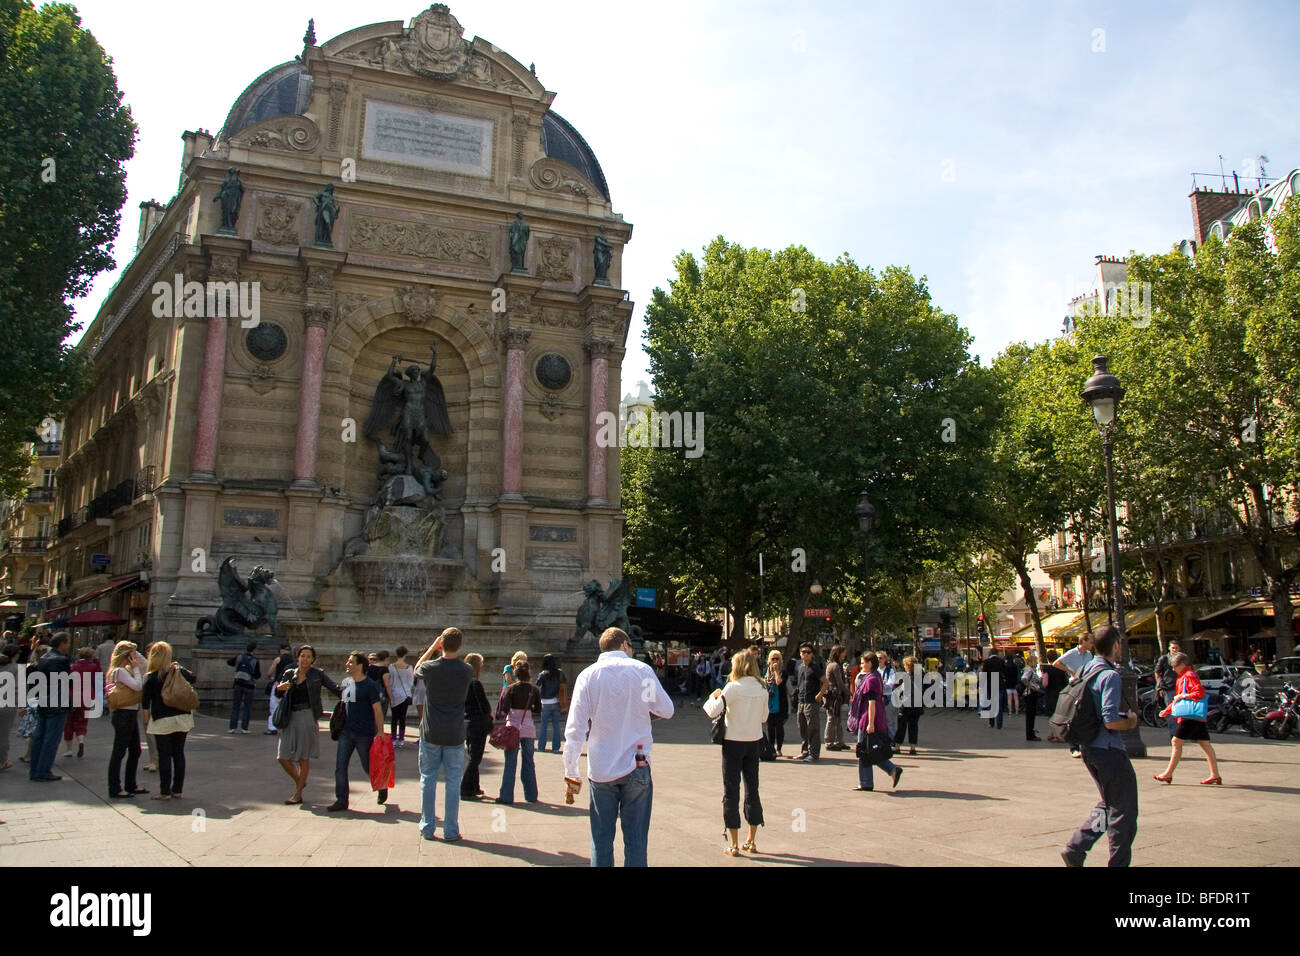 La Fontaine Saint-Michel situé dans la Place Saint-Michel, Paris, France. Banque D'Images